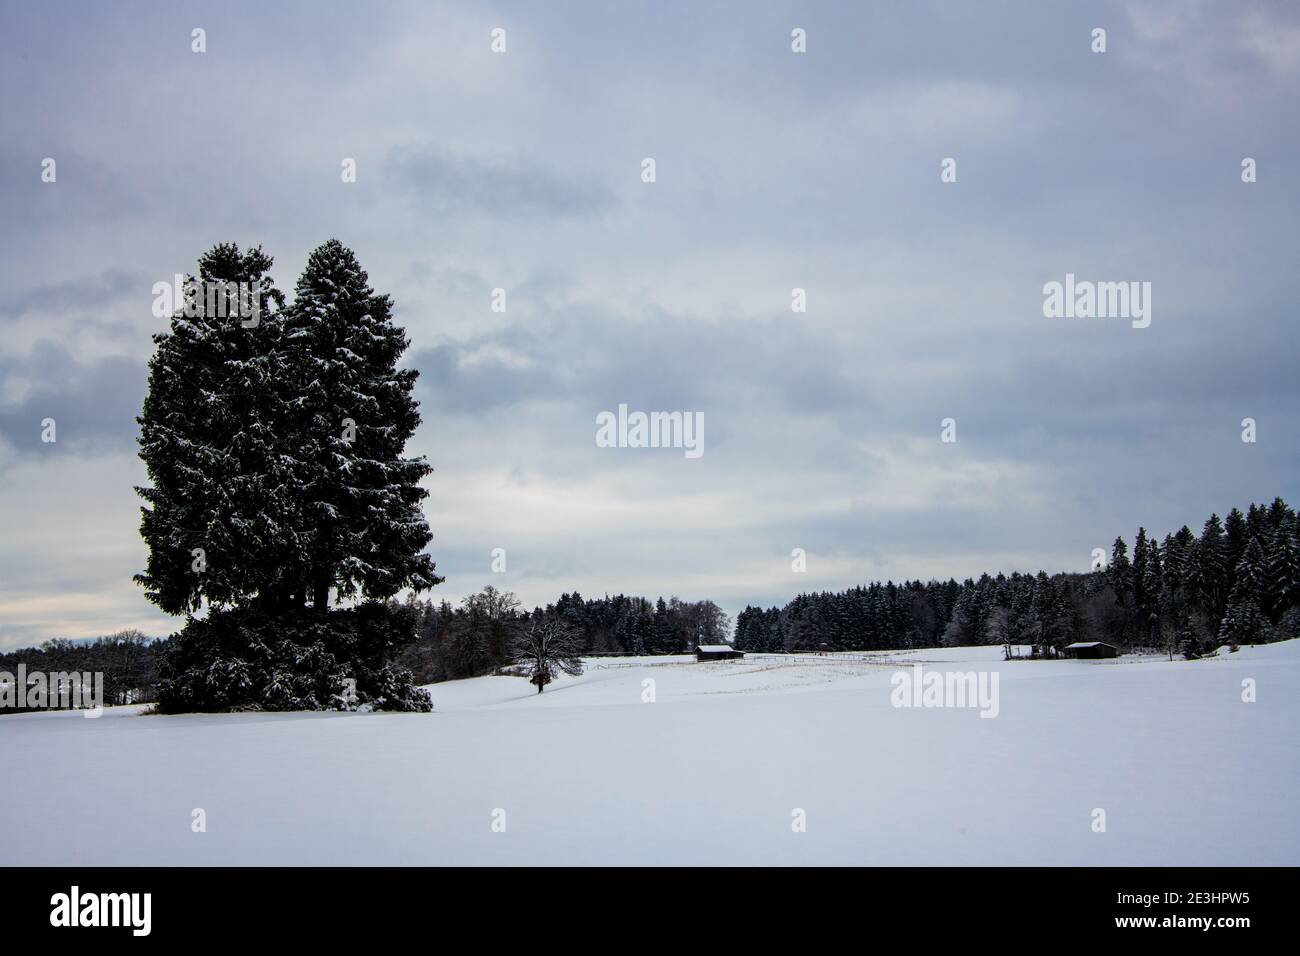 En plein air, l'hiver est pittoresque par temps froid et neige Europe centrale Banque D'Images